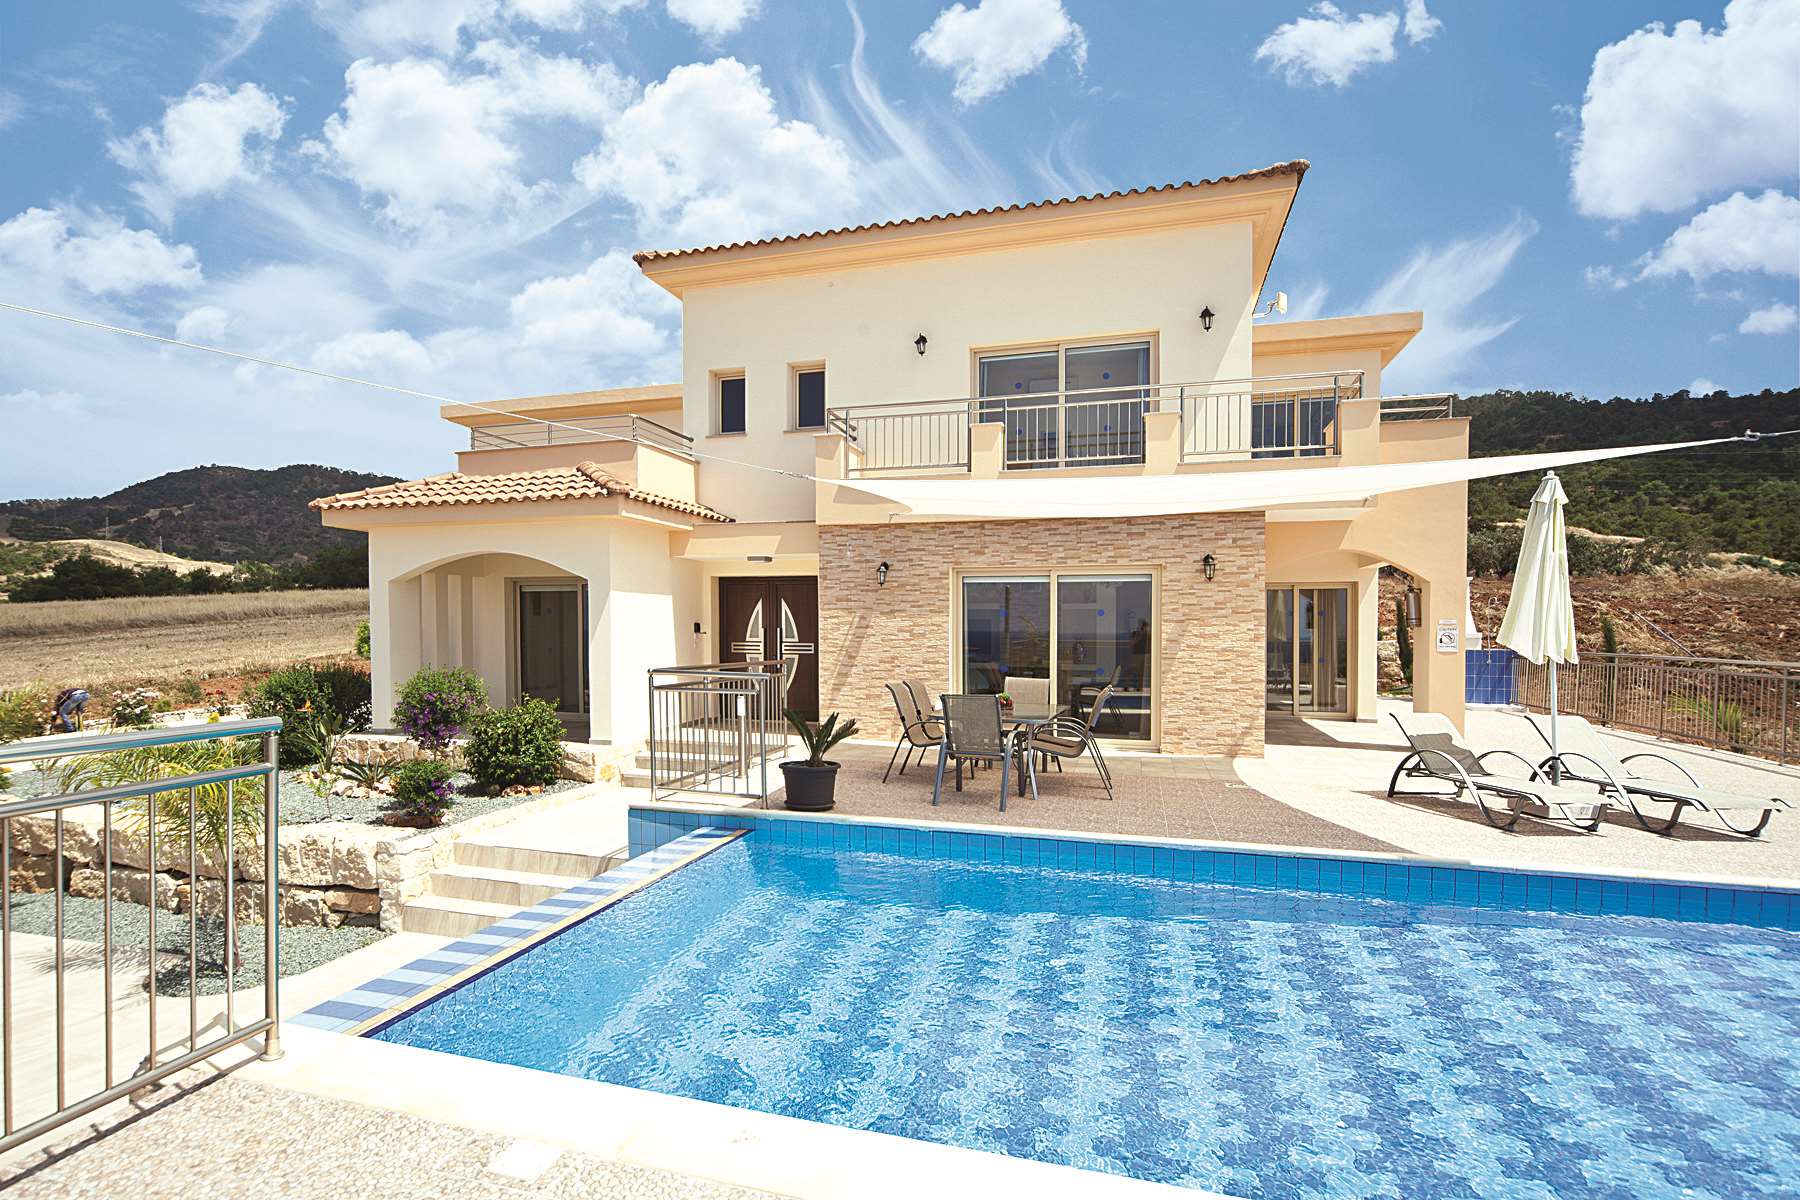 A James Villas property in Cyprus